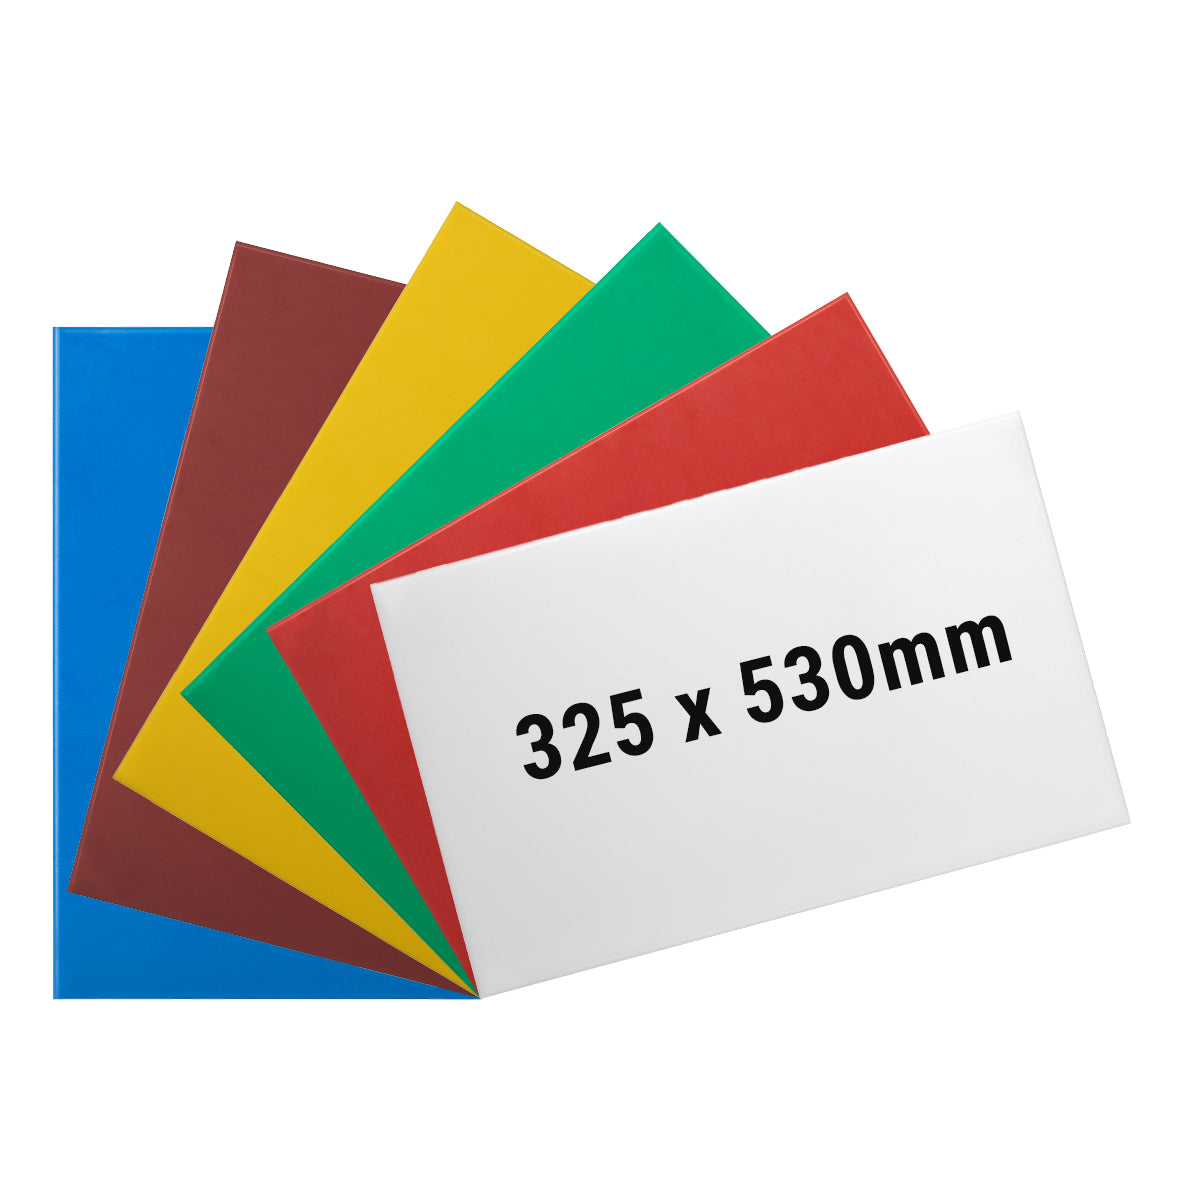 (6 stk.) Skærebræt sæt - 32,5 x 53 cm - Tykkelse 2 cm - Multi-farvet